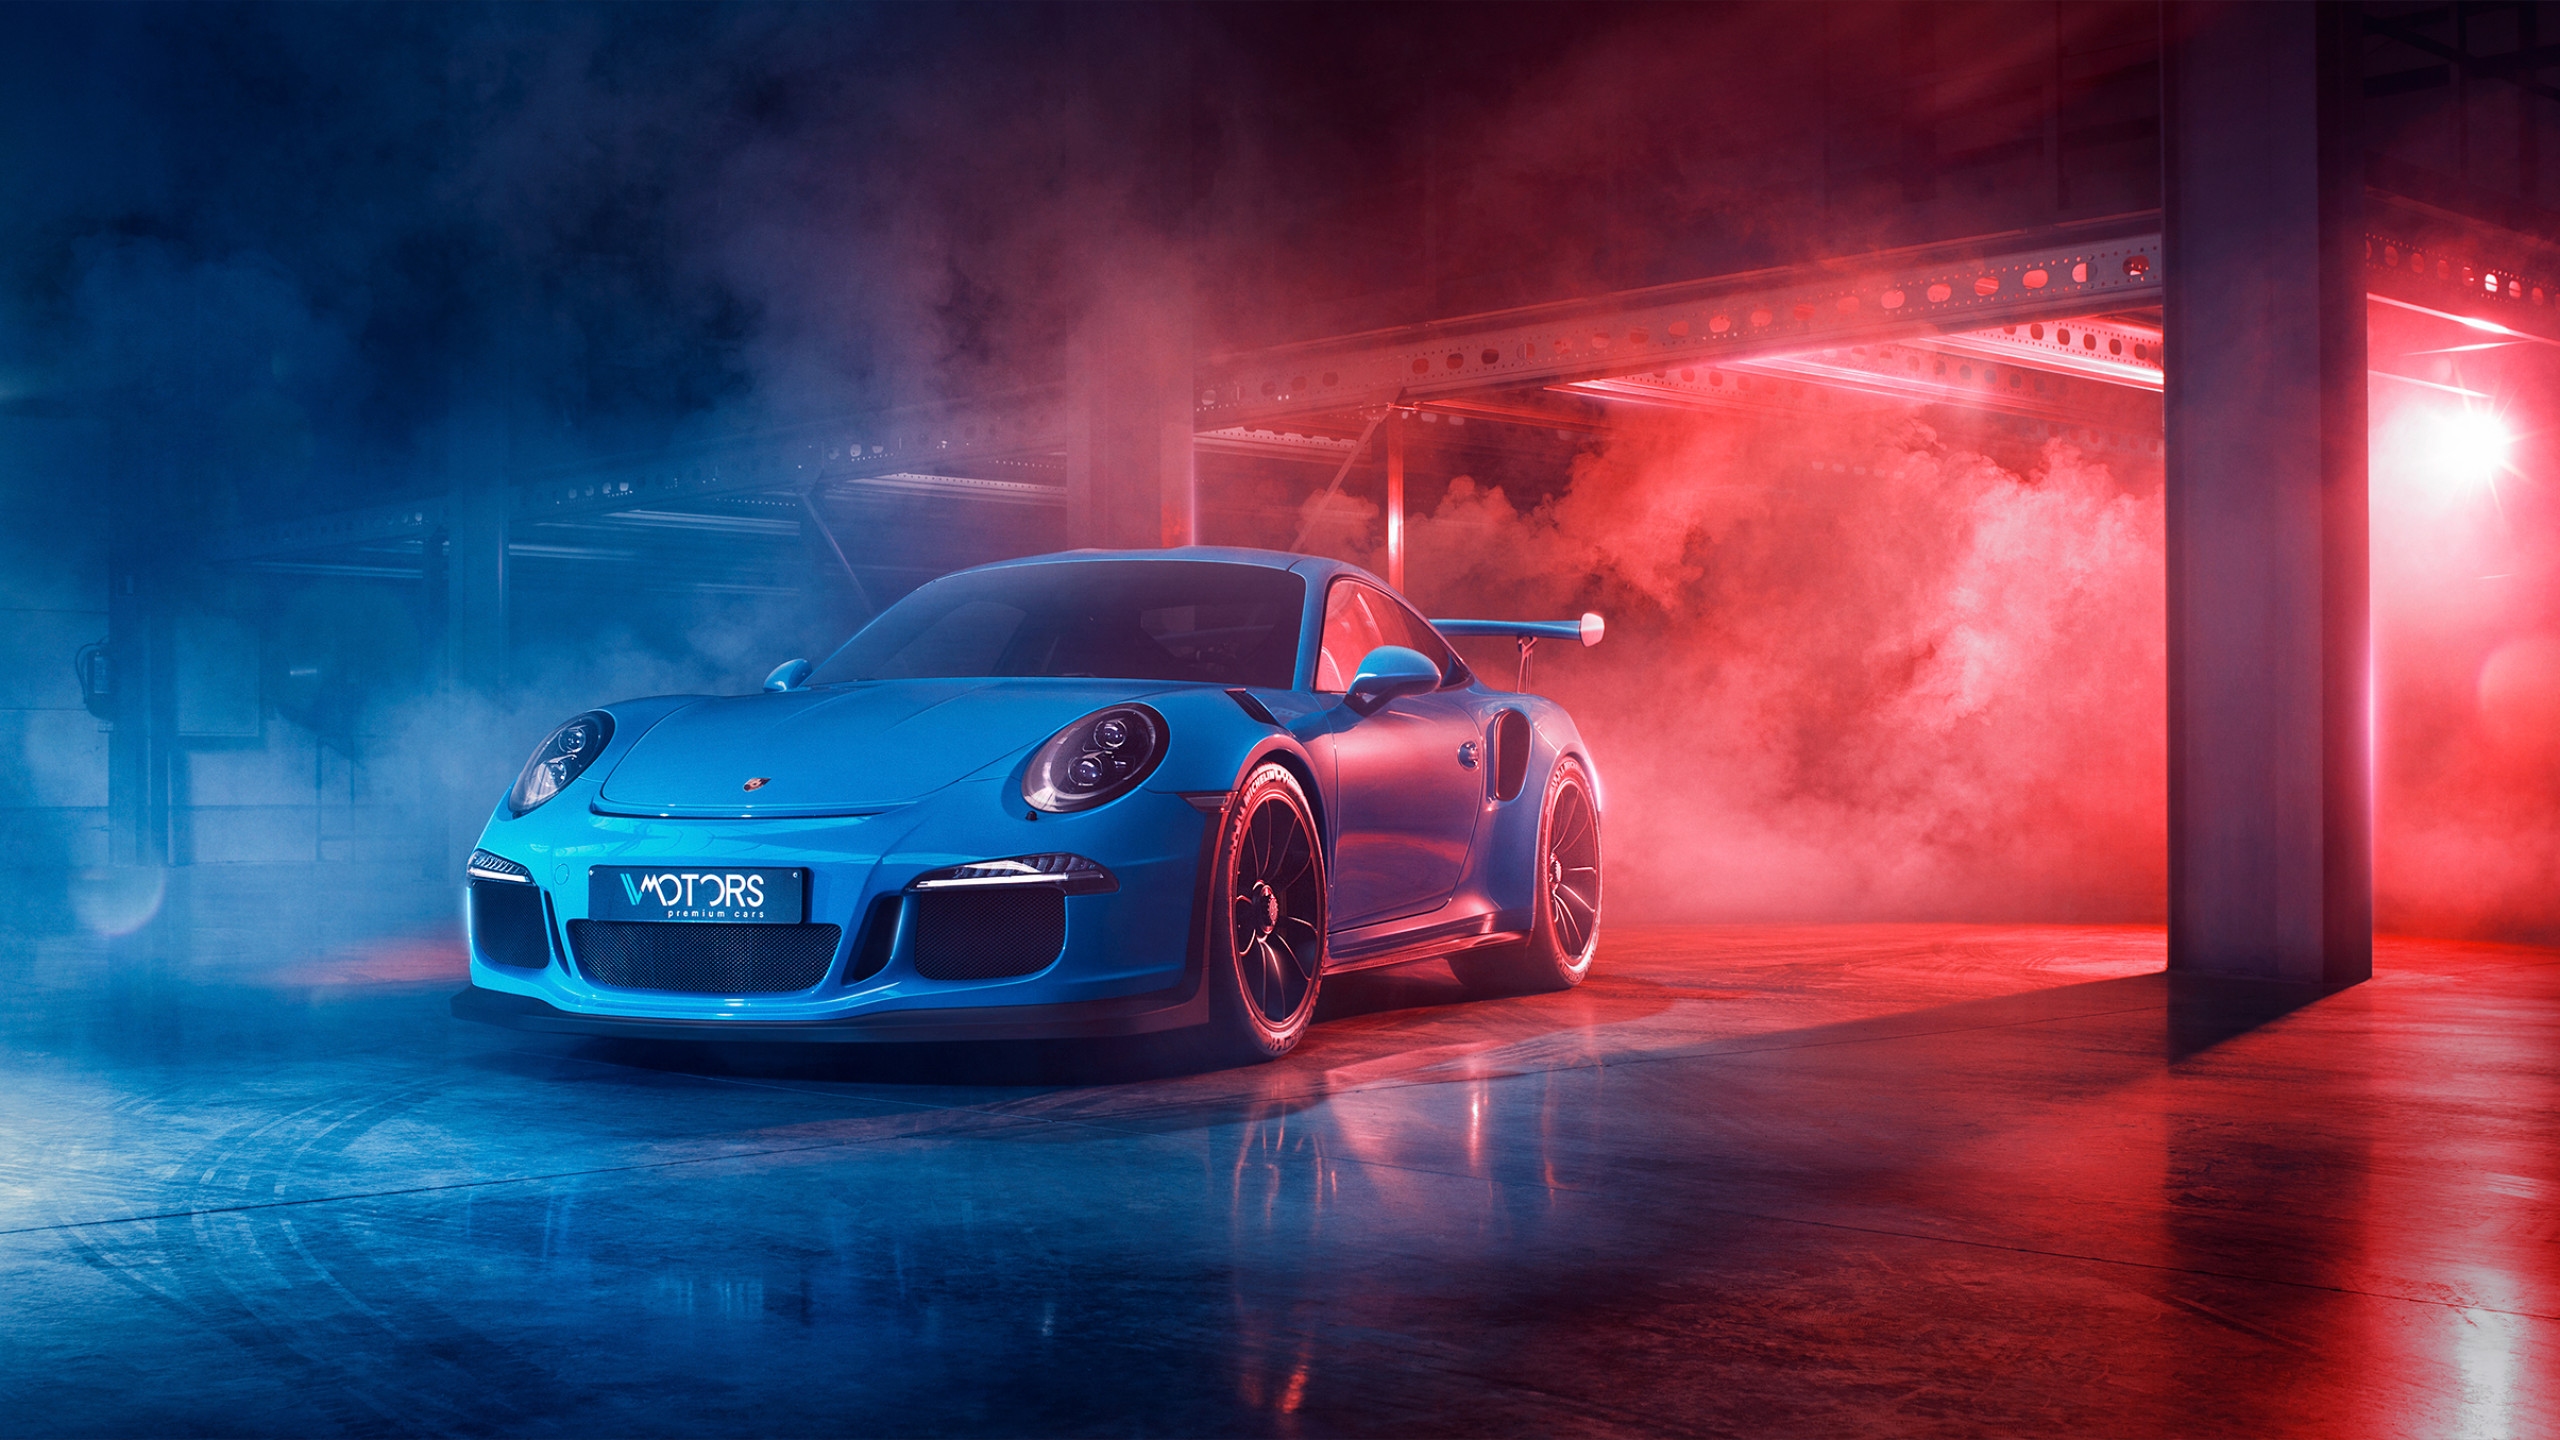 Blue Porsche Gt3 Rs , HD Wallpaper & Backgrounds